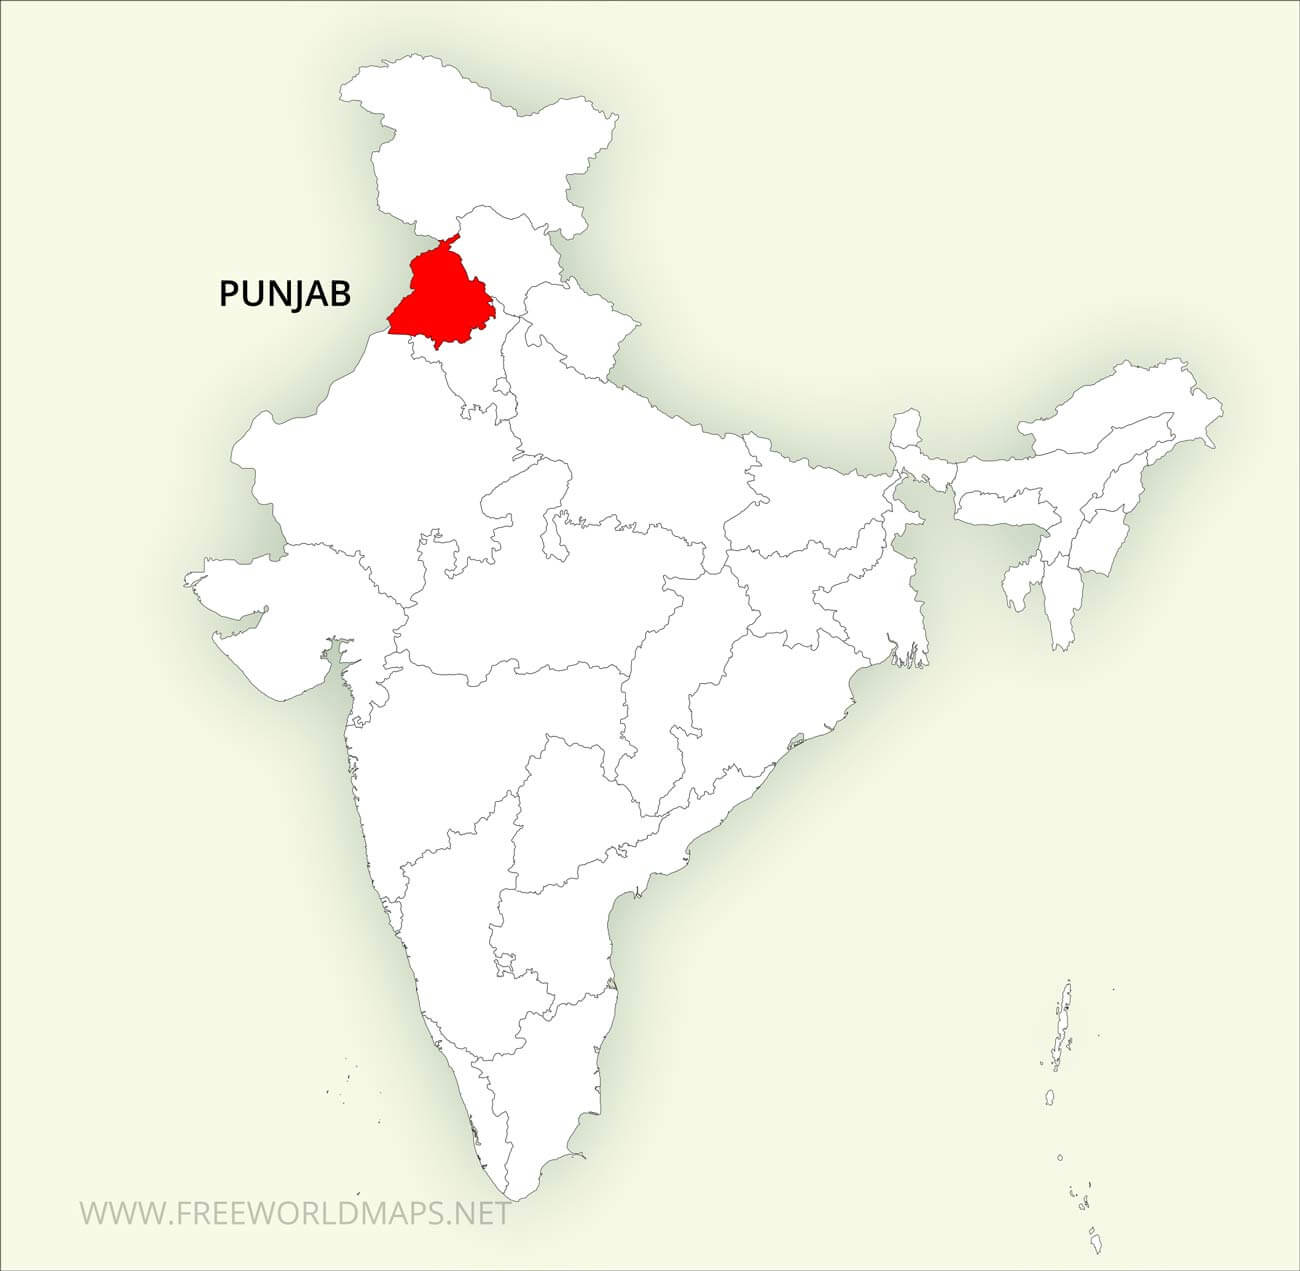 Resultat d'imatges per a "punjab map india"